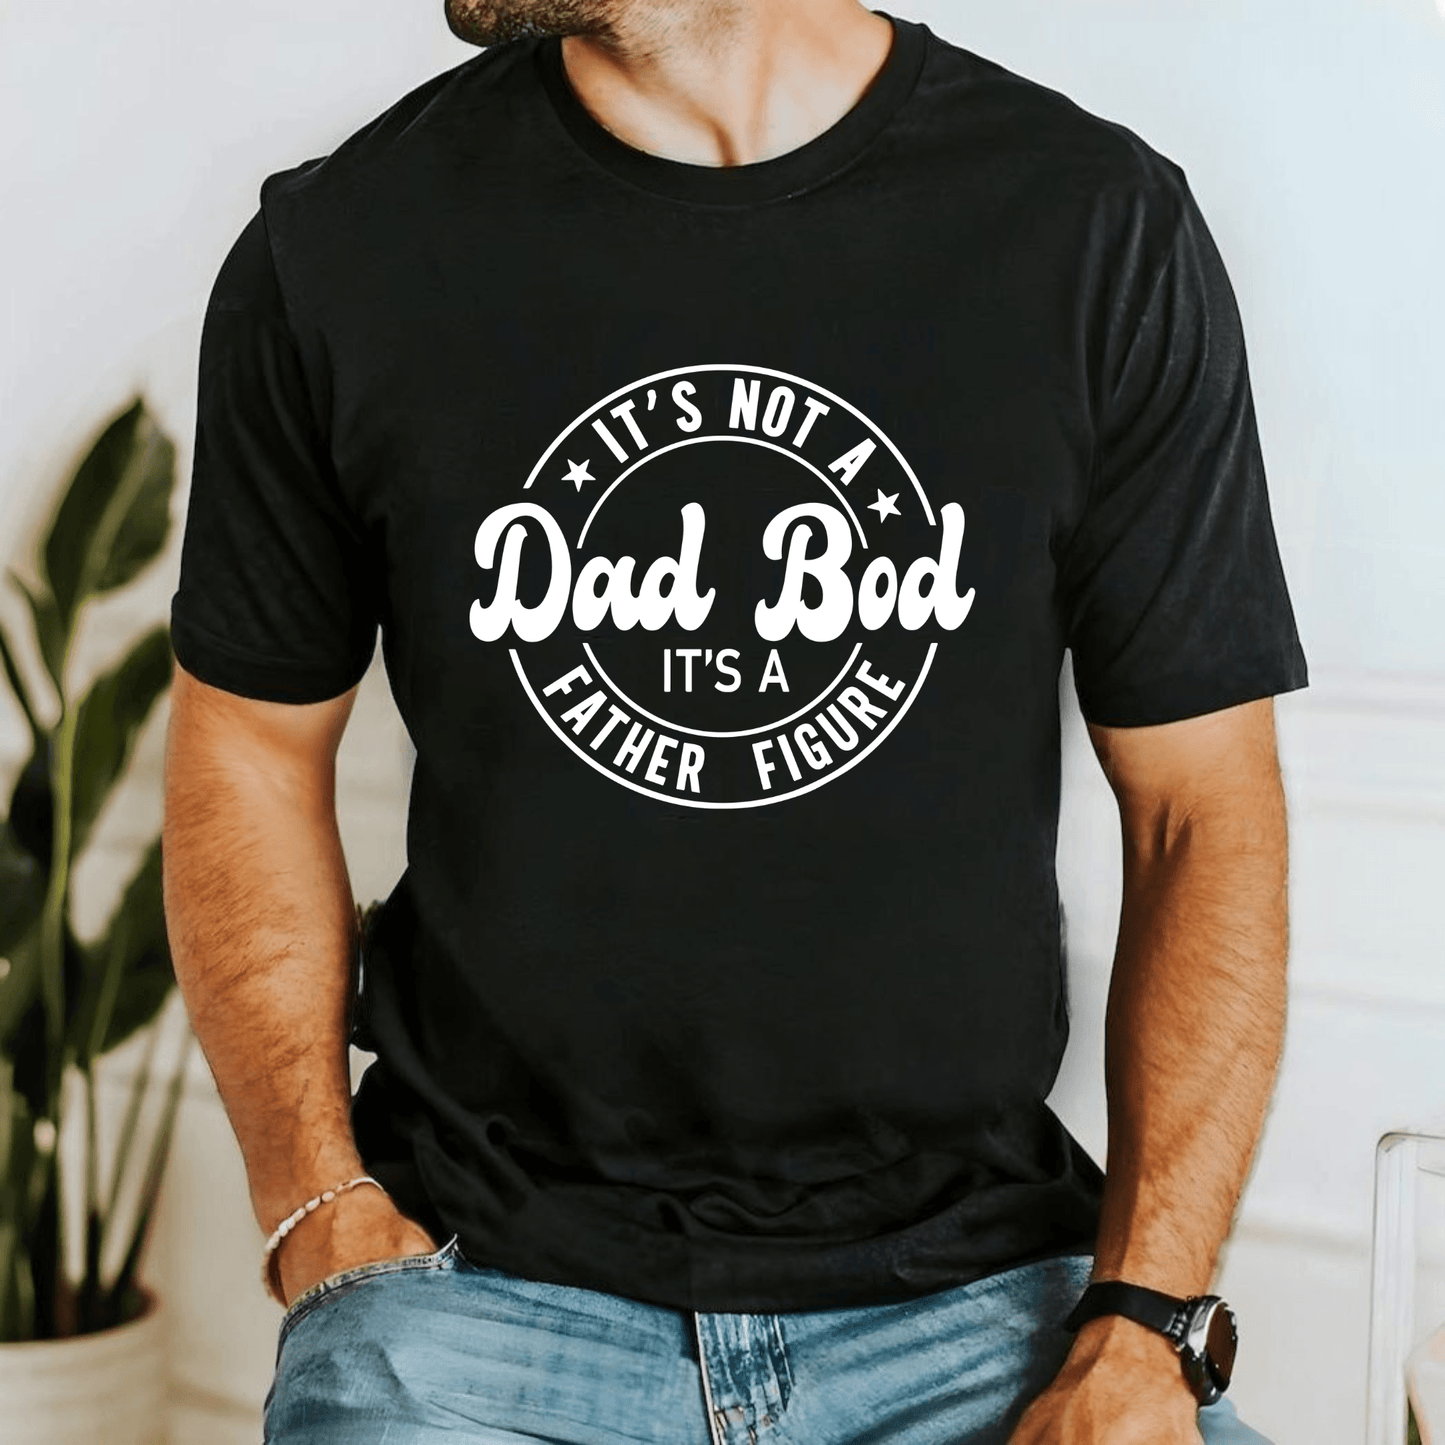 Vaterfigur Statt Dad Bod - Witziges Shirt für Väter - GiftHaus